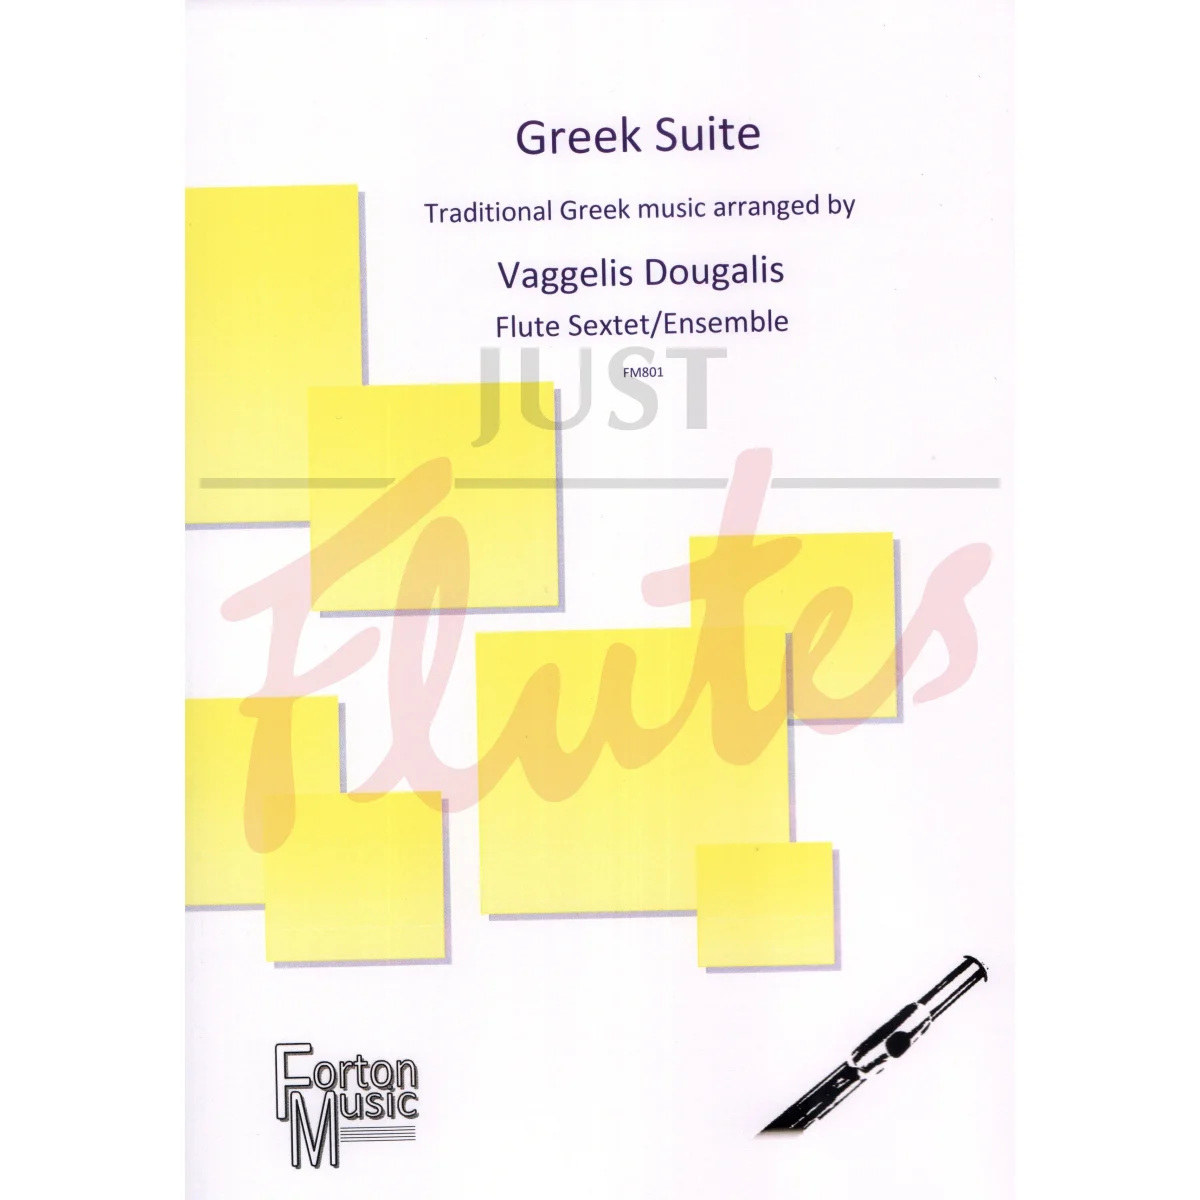 Greek Suite for Flute Sextet/Ensemble